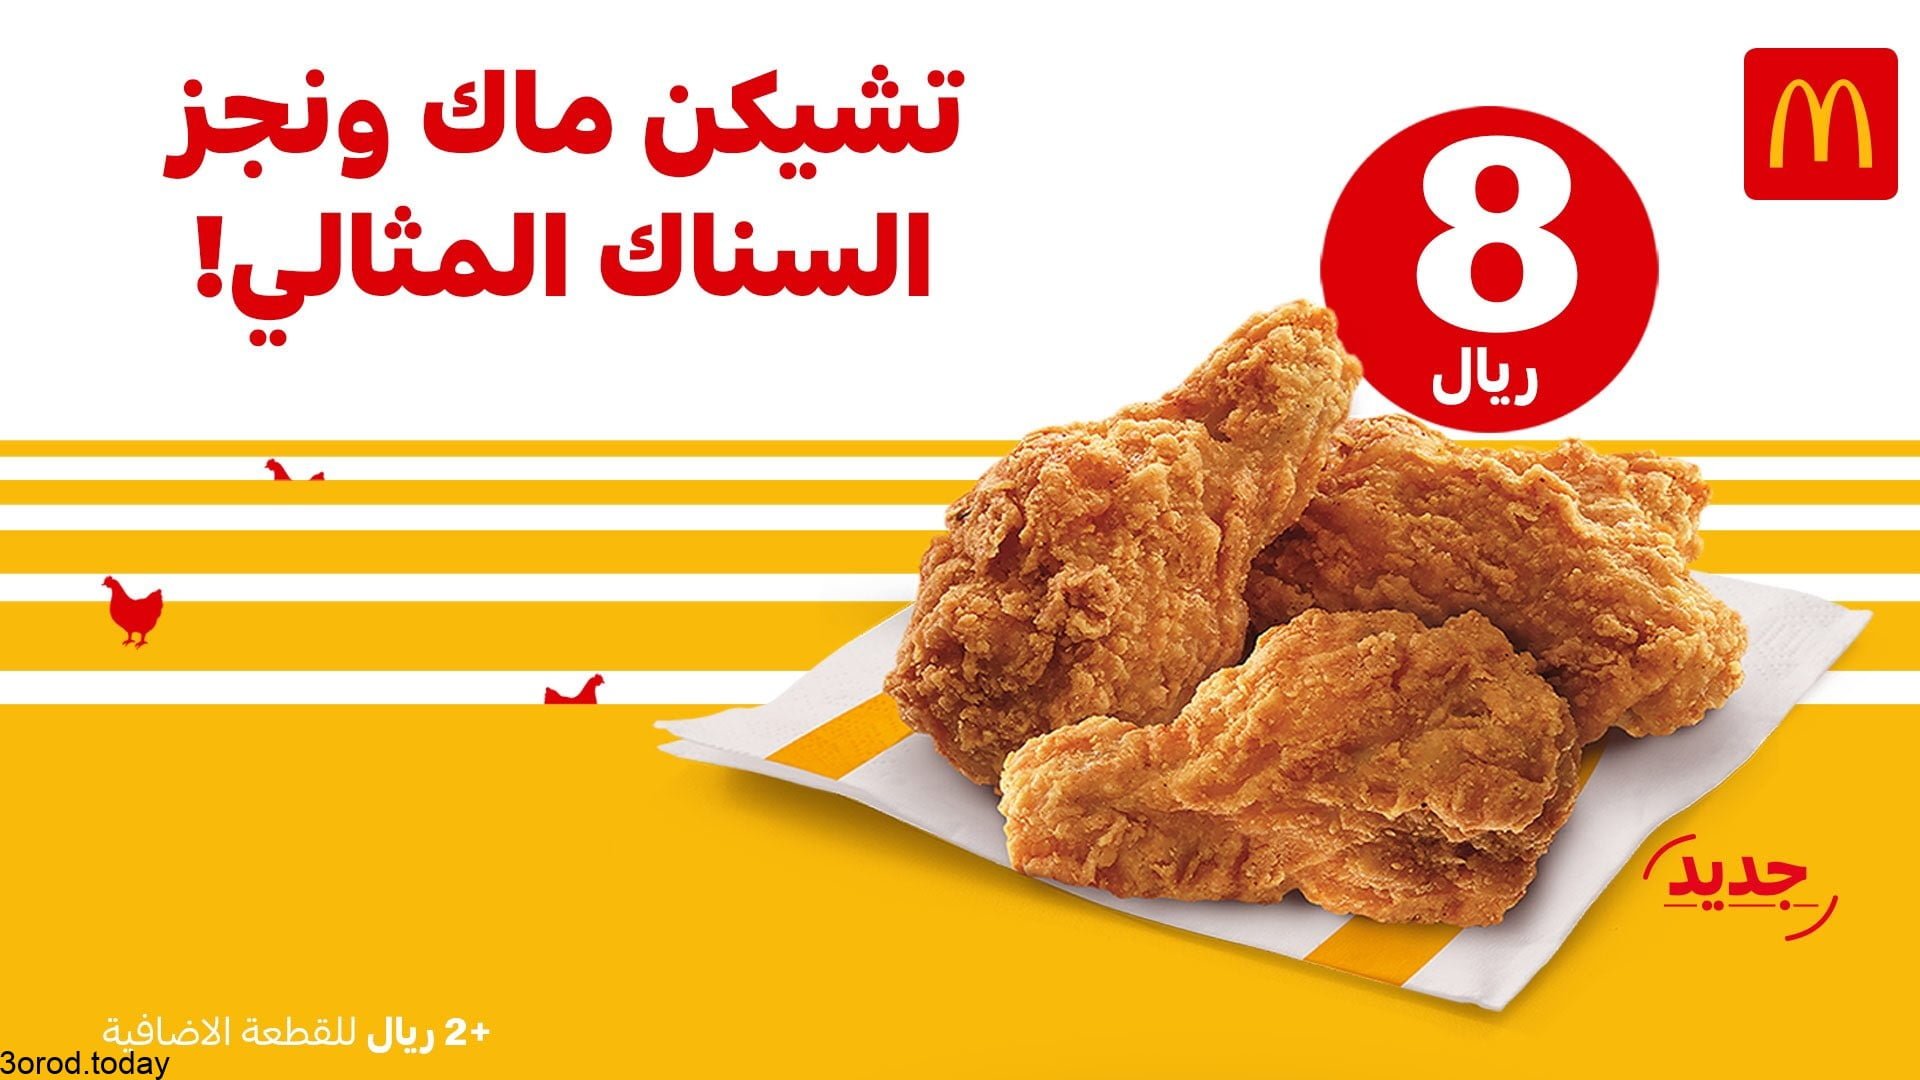 E8LFiCuXMAMUw1K - عروض المطاعم : عروض مطعم ماكدونالدز السعودية المنطقة الشرقية علي وجبة تشيكن بـ 9 ريال